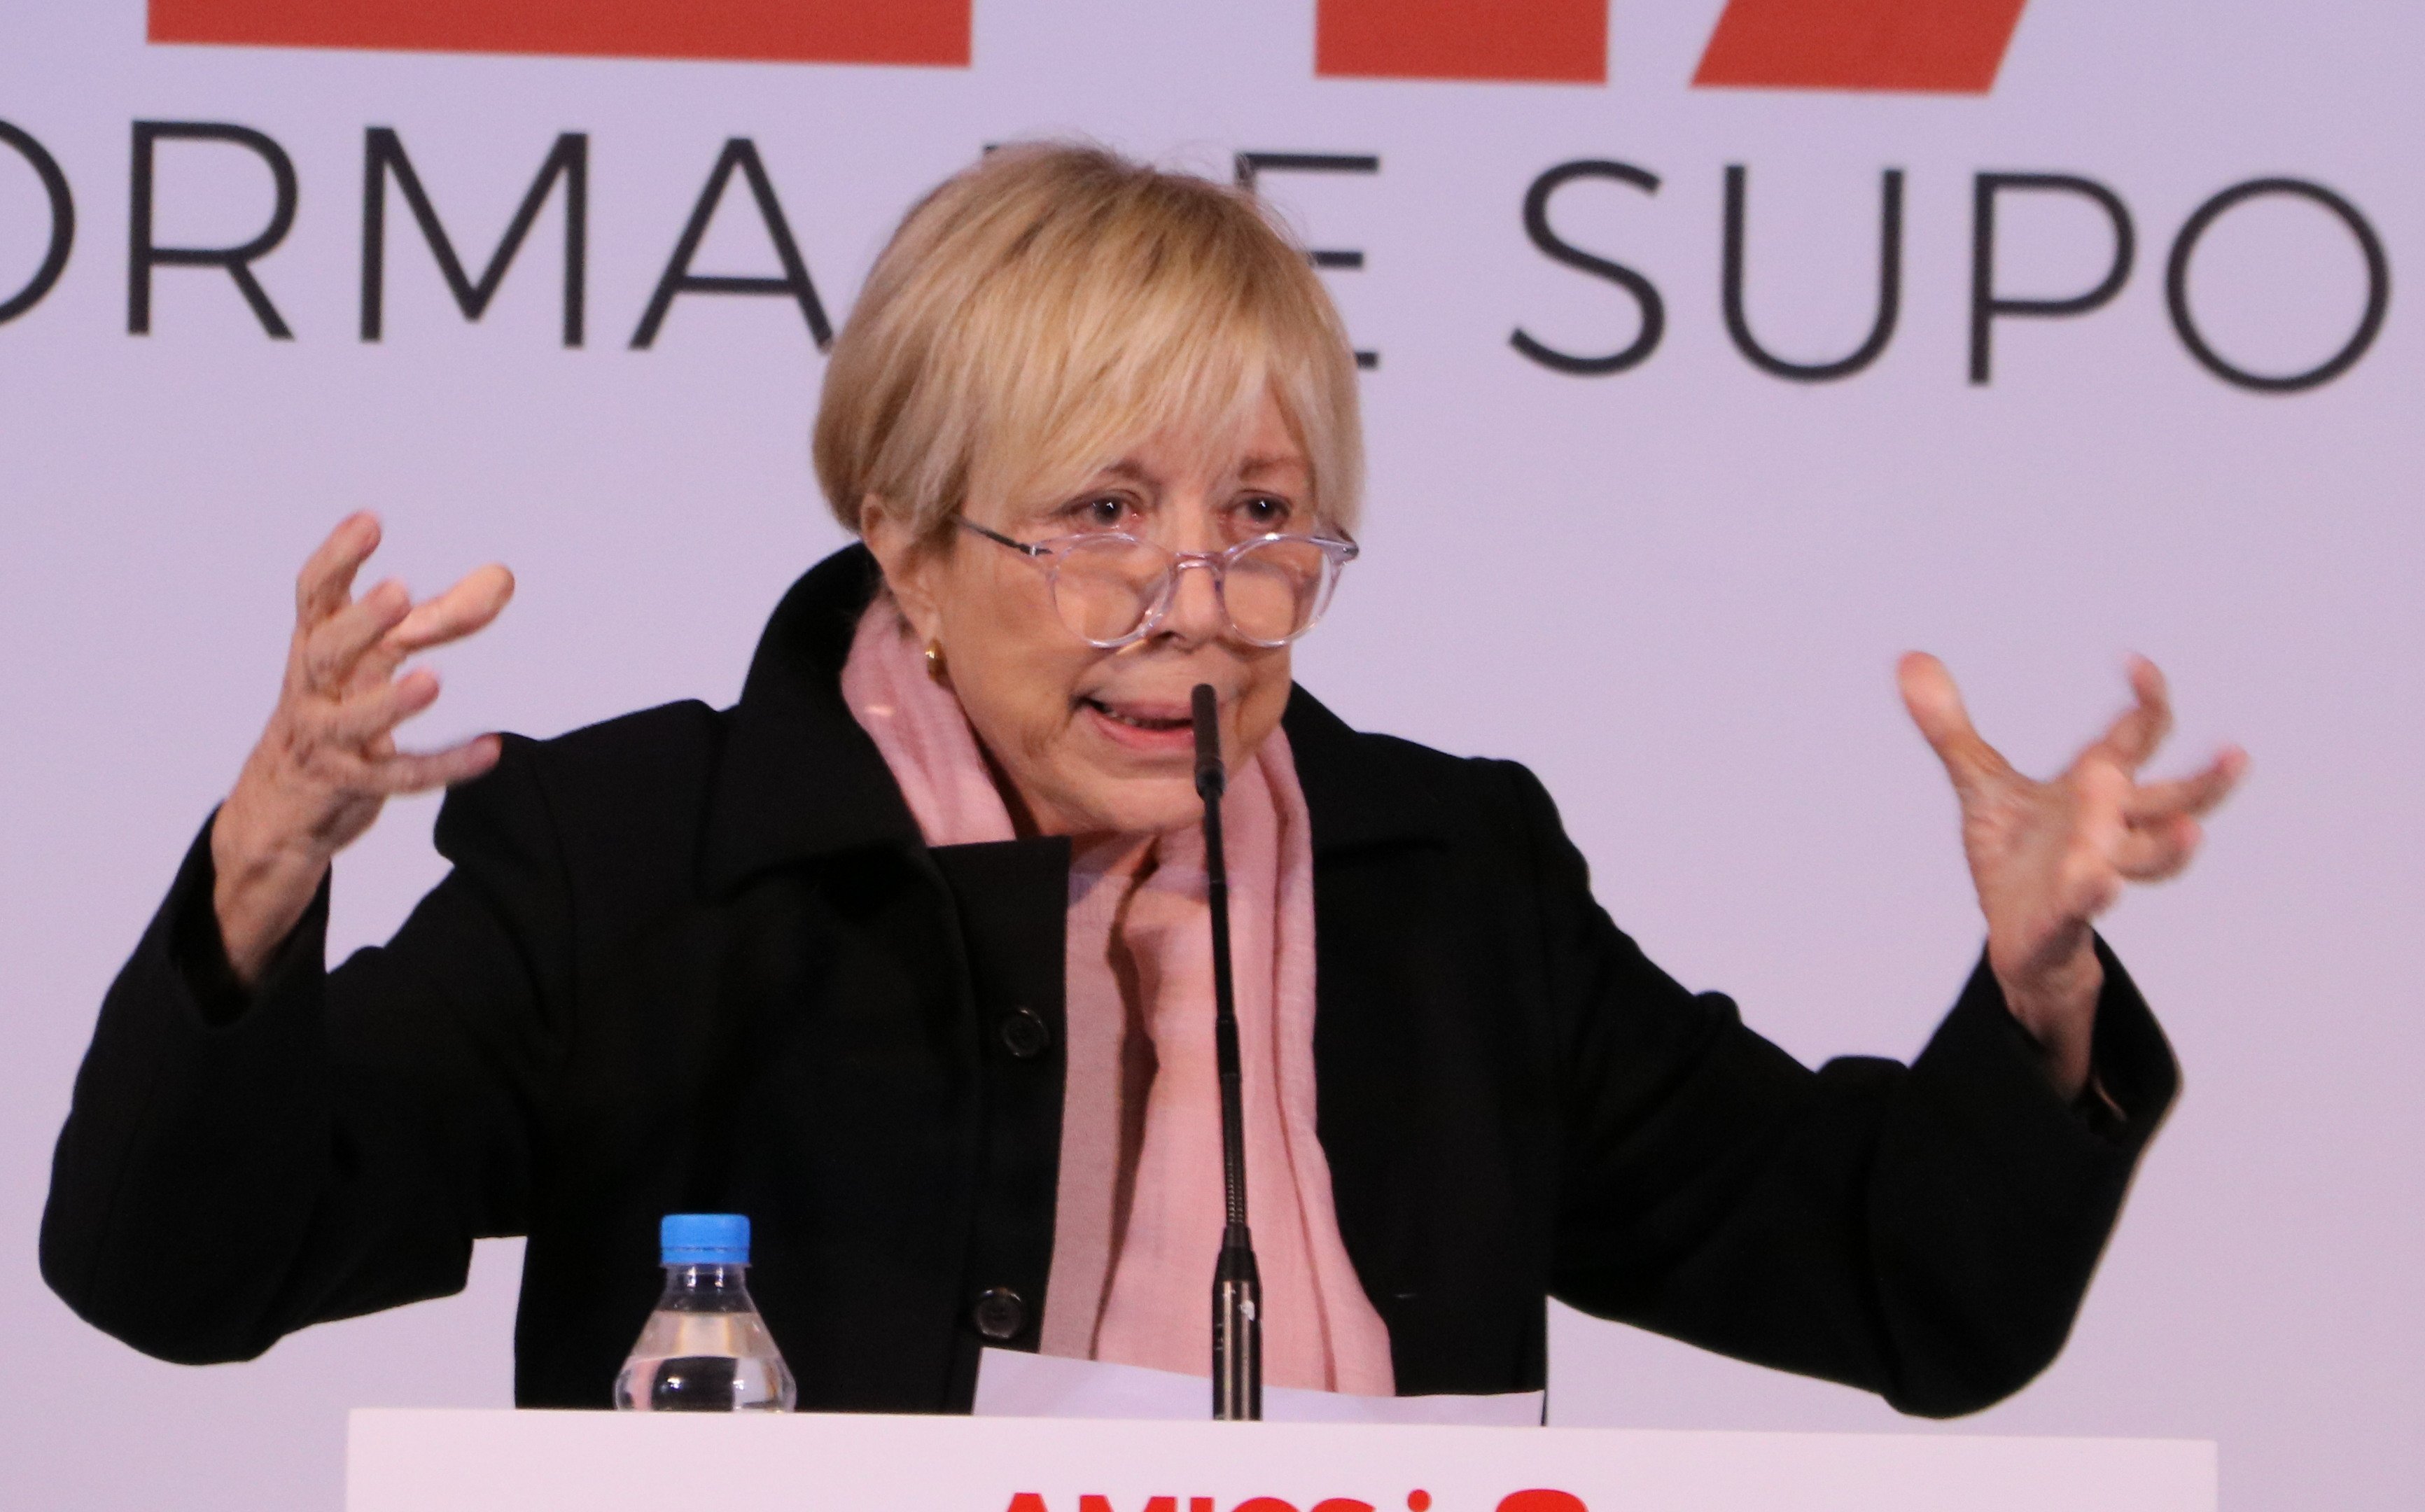 Rosa Maria Sardà pierde los papeles atacando a los indepes: "En Catalunya hay racismo"